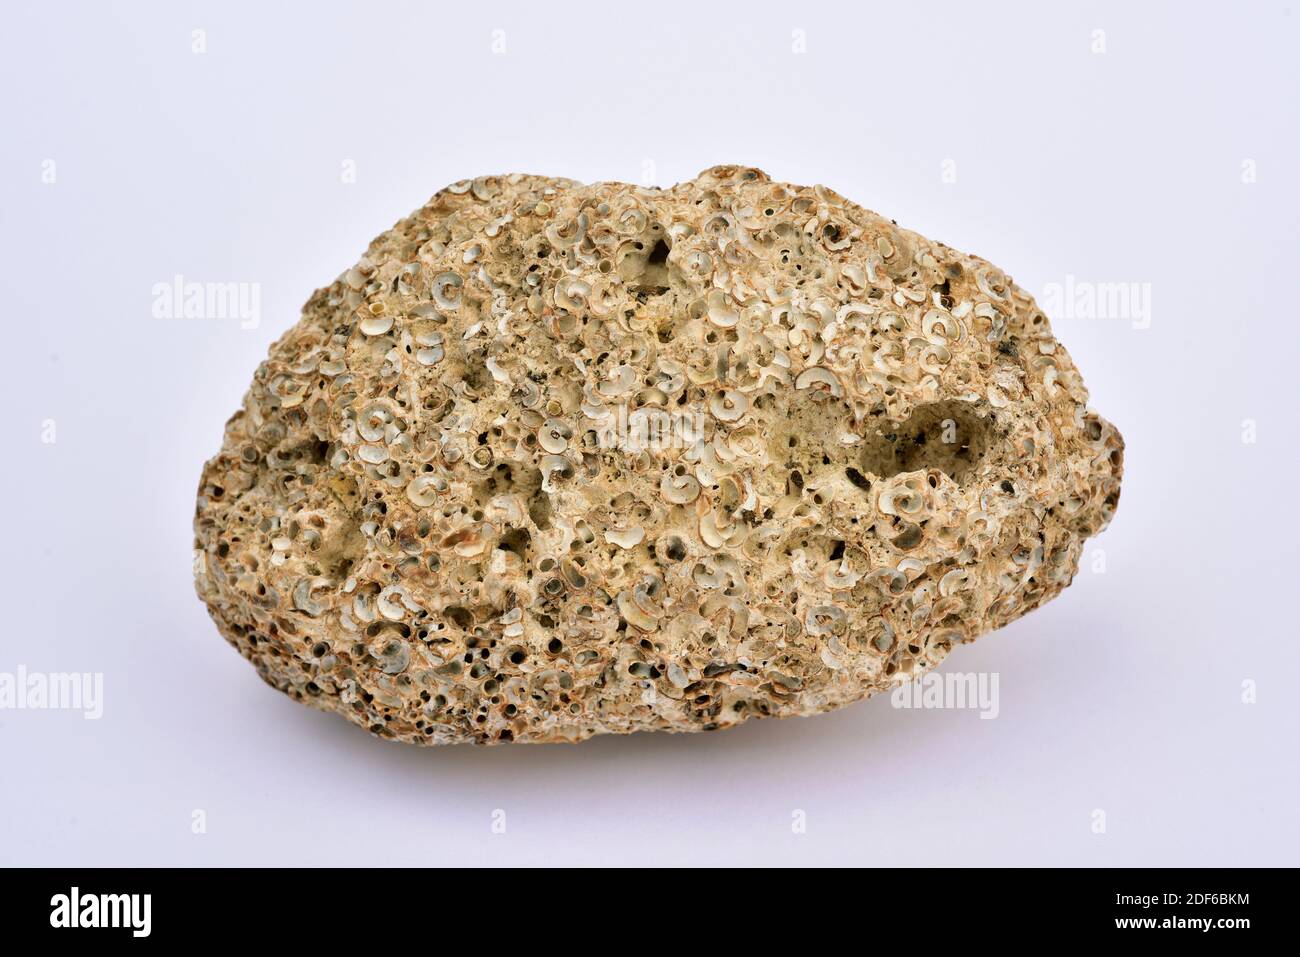 Bioerosione di una roccia calcarea per molluschi e vermi polichaete. La bioerosione è un processo chimico causato da organismi viventi. Il campione proviene da Foto Stock